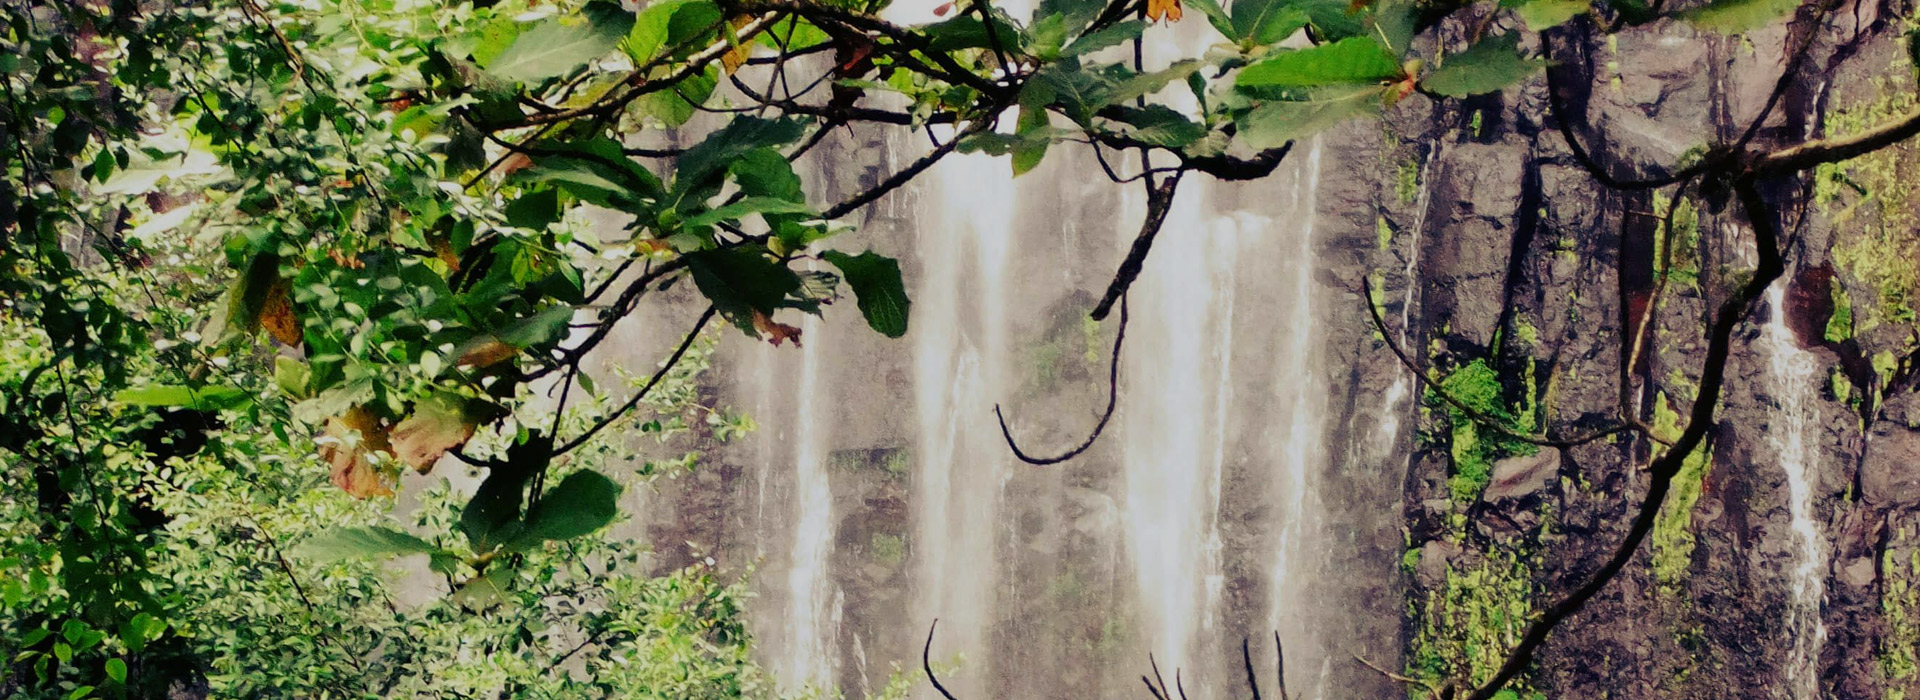 Materuni Waterfalls